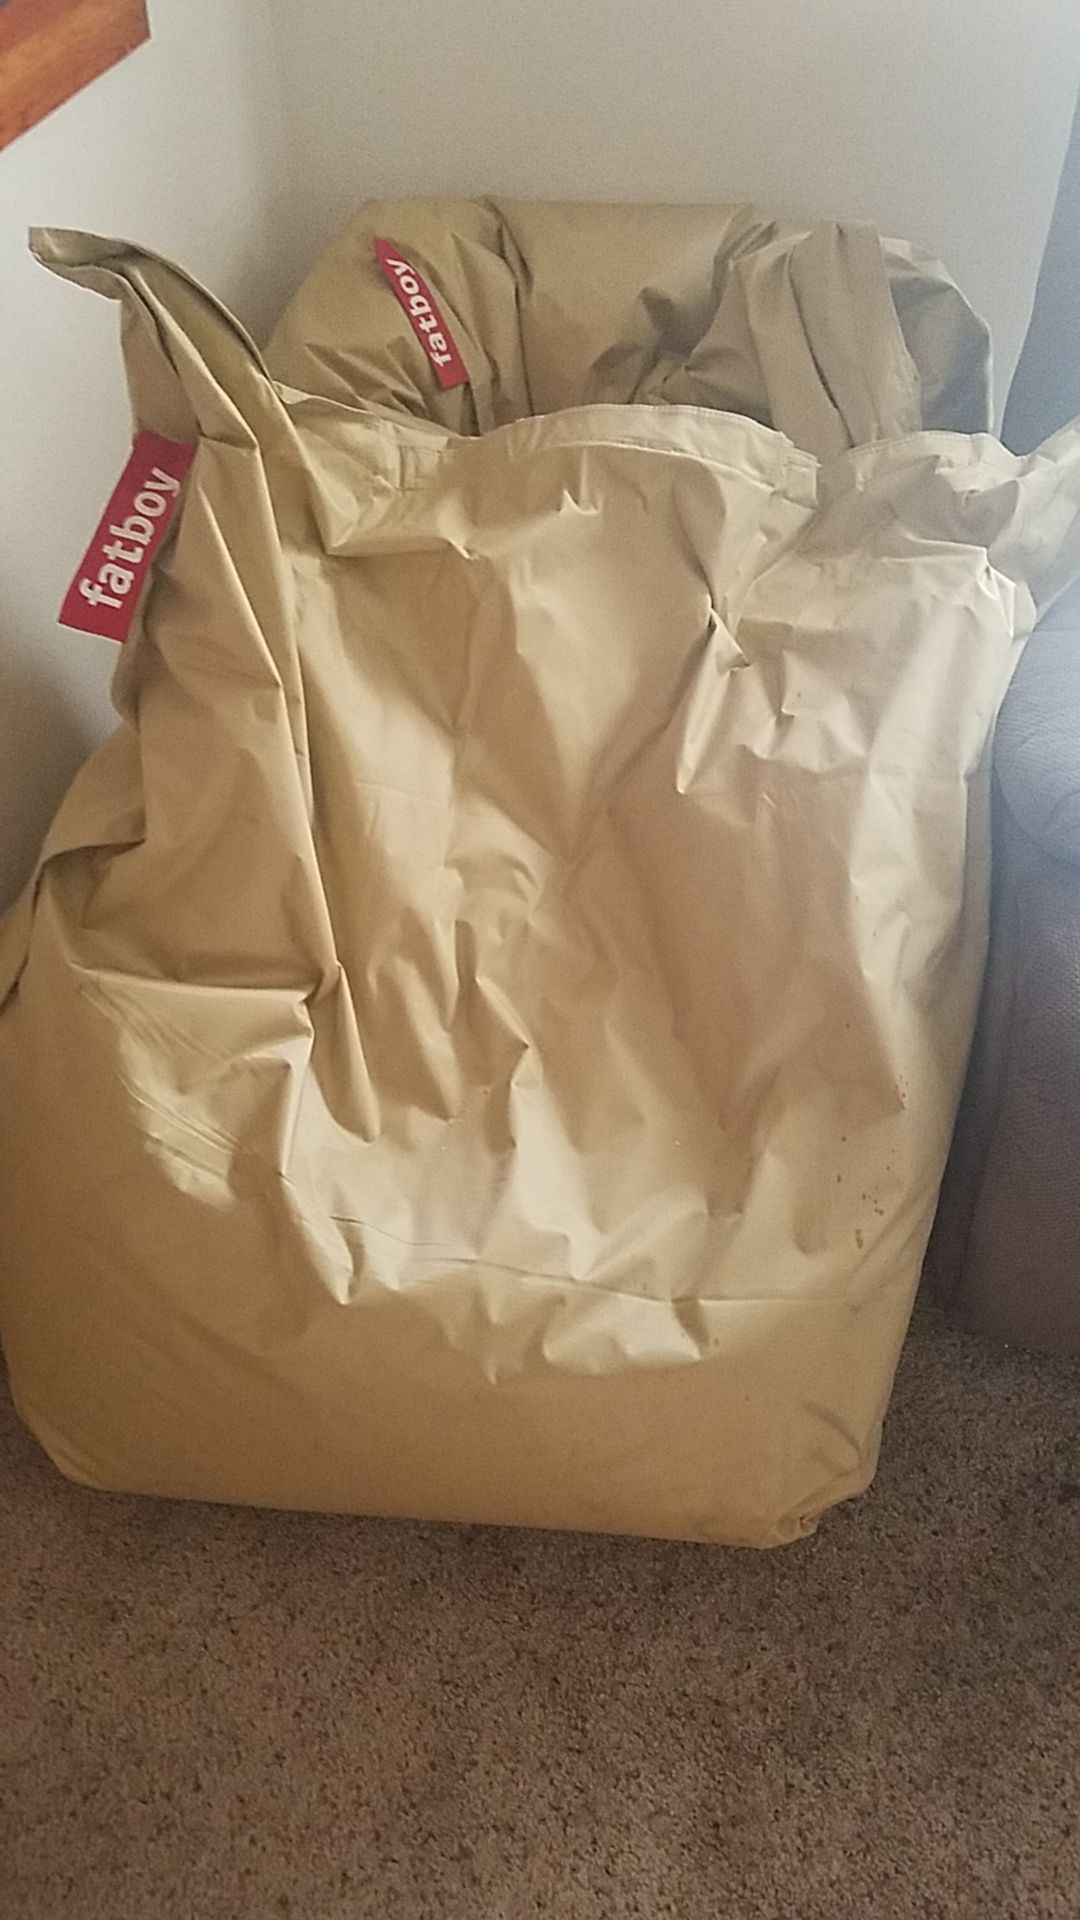 XL Bean bag chairs